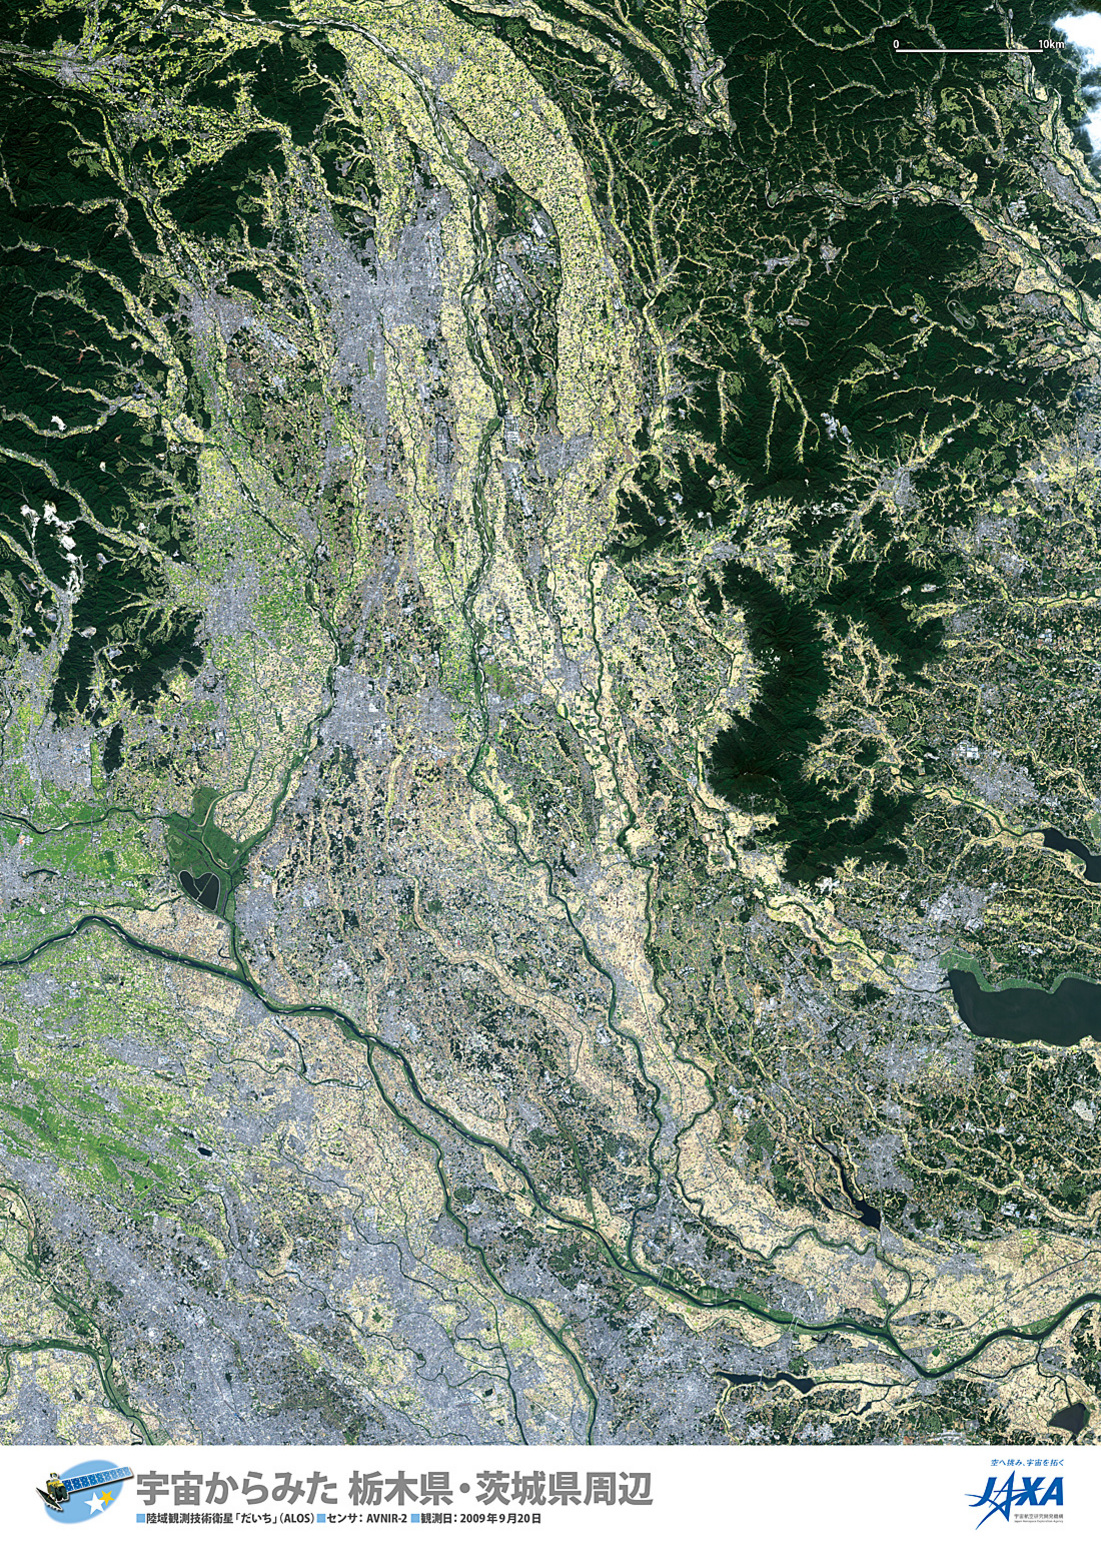 だいちから見た日本の都市 栃木 茨城:衛星画像（ポスター仕上げ）